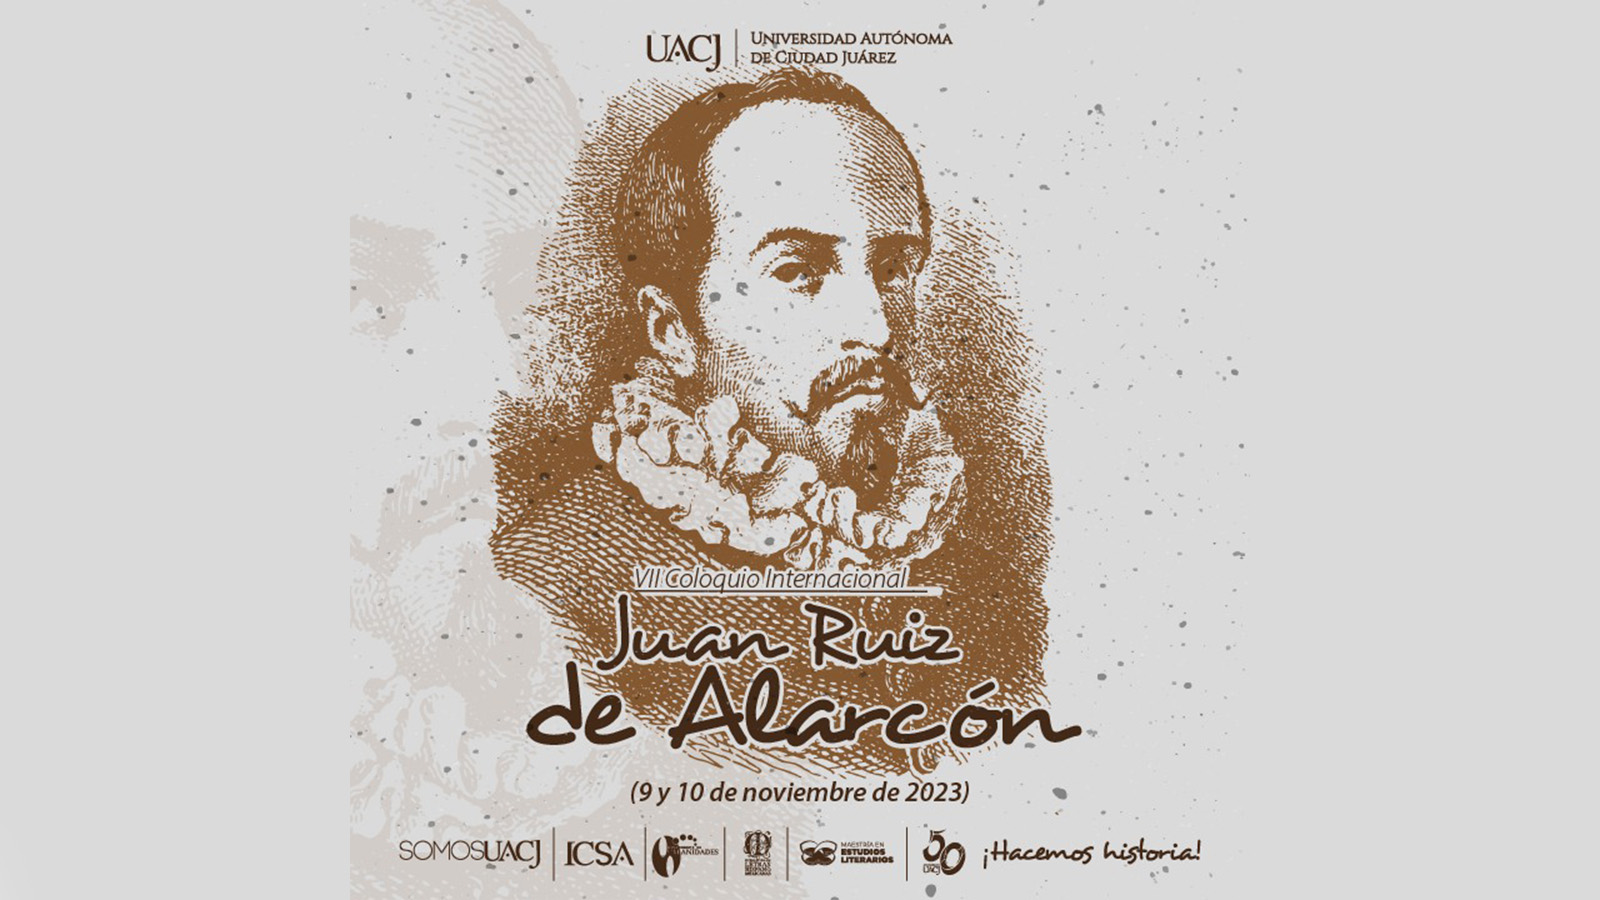 La UACJ invita al inicio del 7.° coloquio internacional Juan Ruiz de Alarcón  